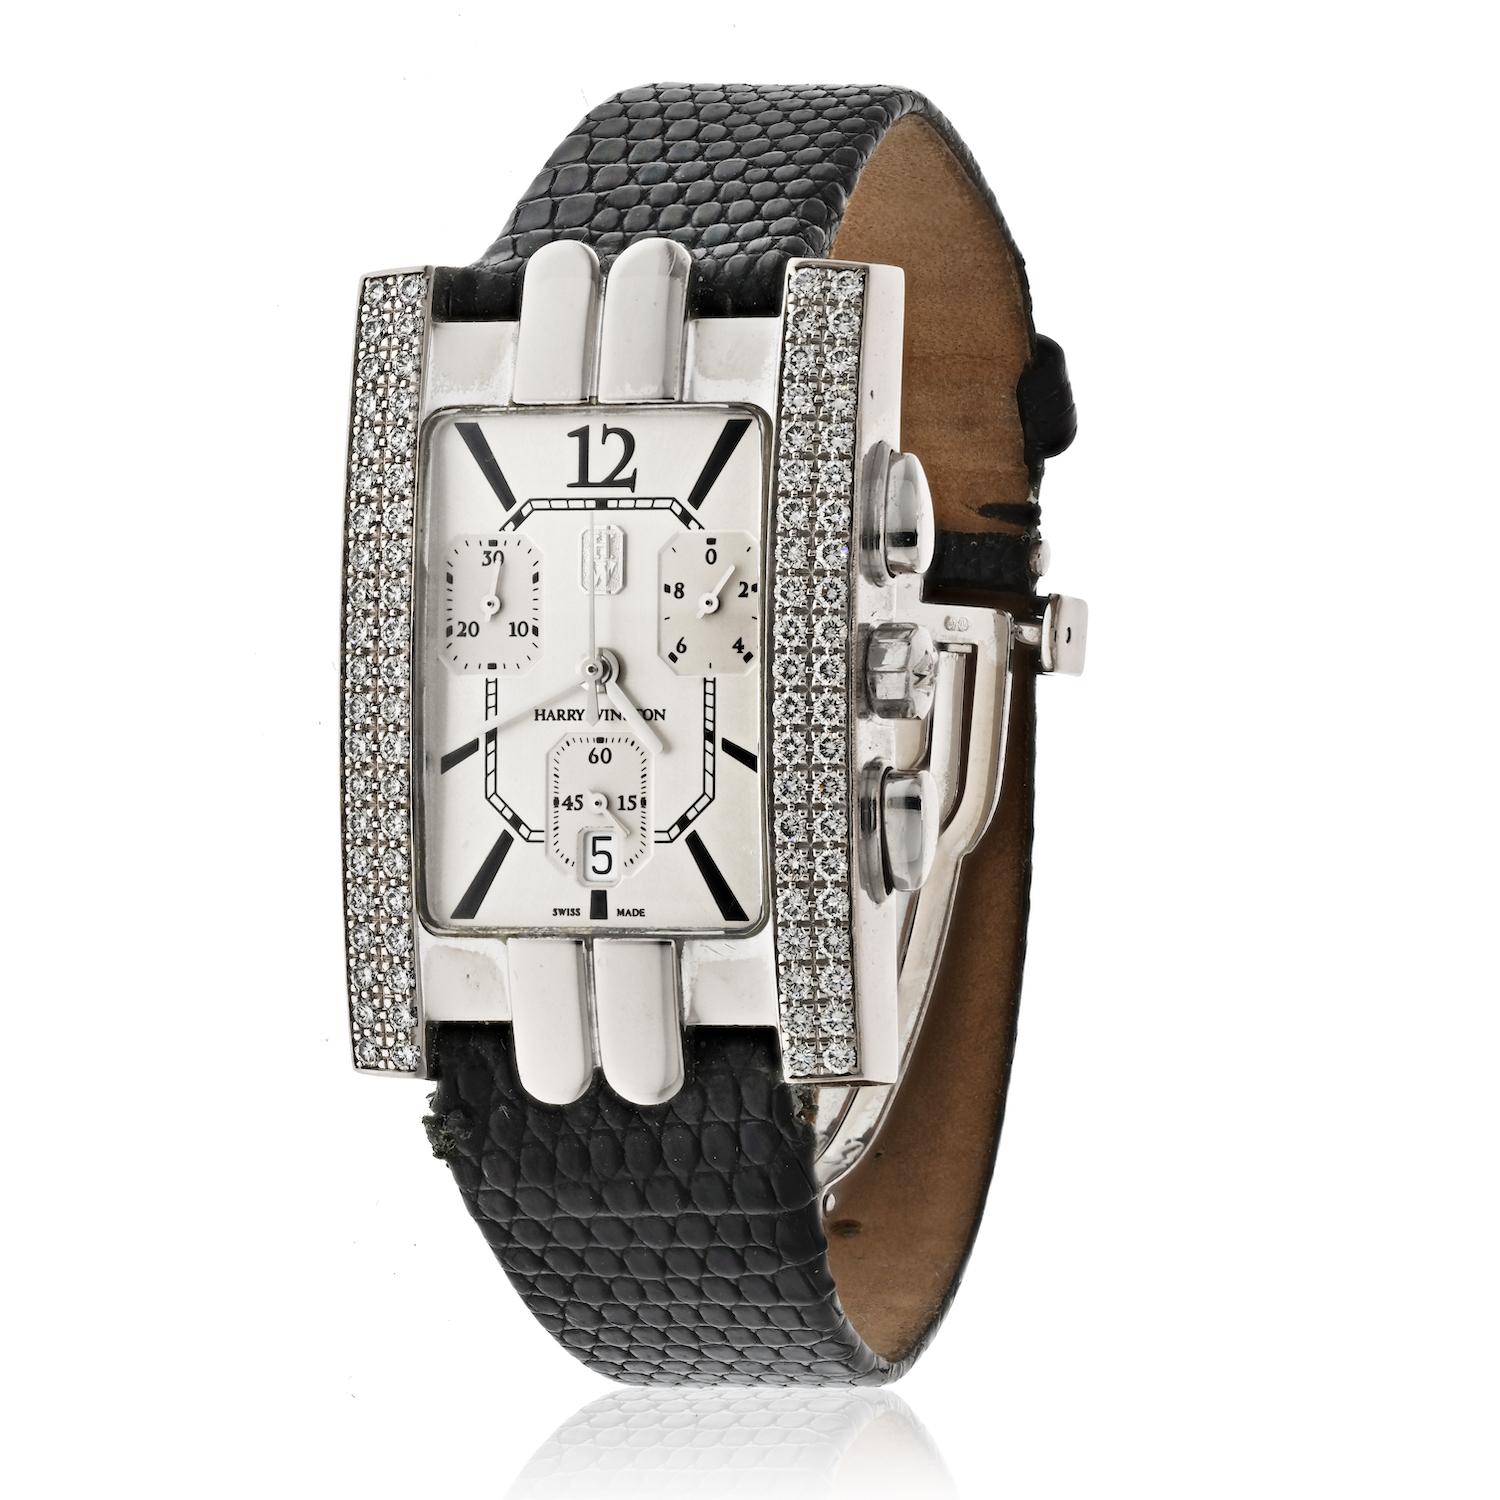 Die Harry Winston 18K White Gold Avenue Automatic Diamond Ladies Watch ist ein exquisiter Zeitmesser, der Luxus und Raffinesse ausstrahlt. Die aus 18 Karat Weißgold gefertigte Uhr ist sowohl elegant als auch langlebig, so dass sie den Test der Zeit